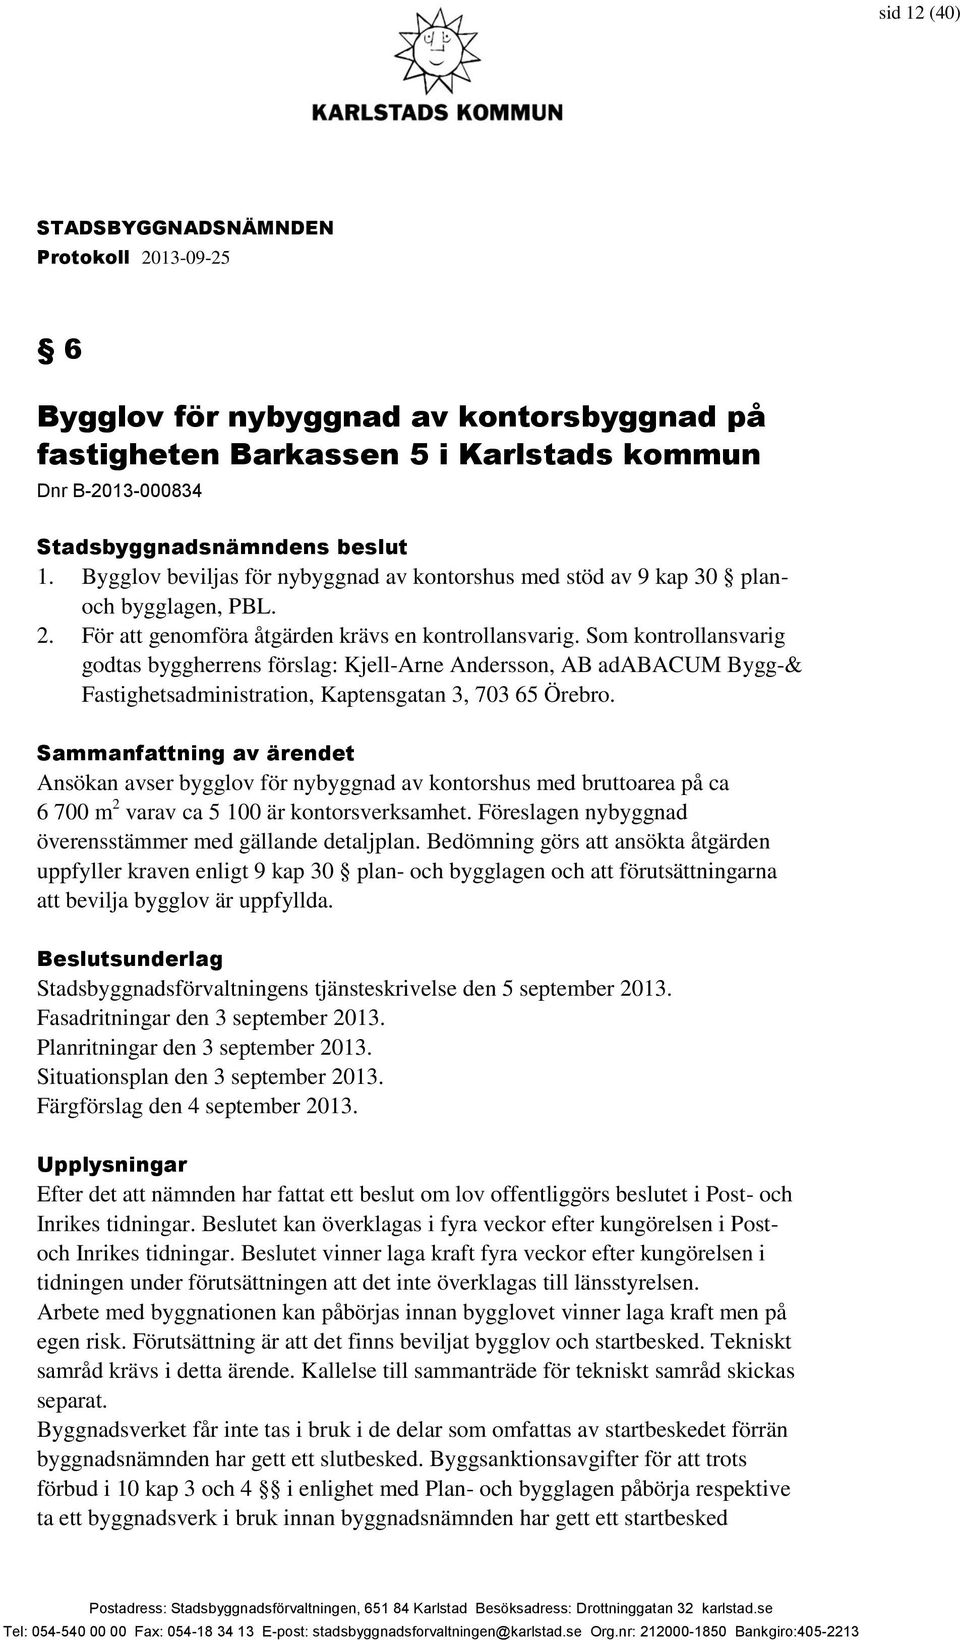 Som kontrollansvarig godtas byggherrens förslag: Kjell-Arne Andersson, AB adabacum Bygg-& Fastighetsadministration, Kaptensgatan 3, 703 65 Örebro.